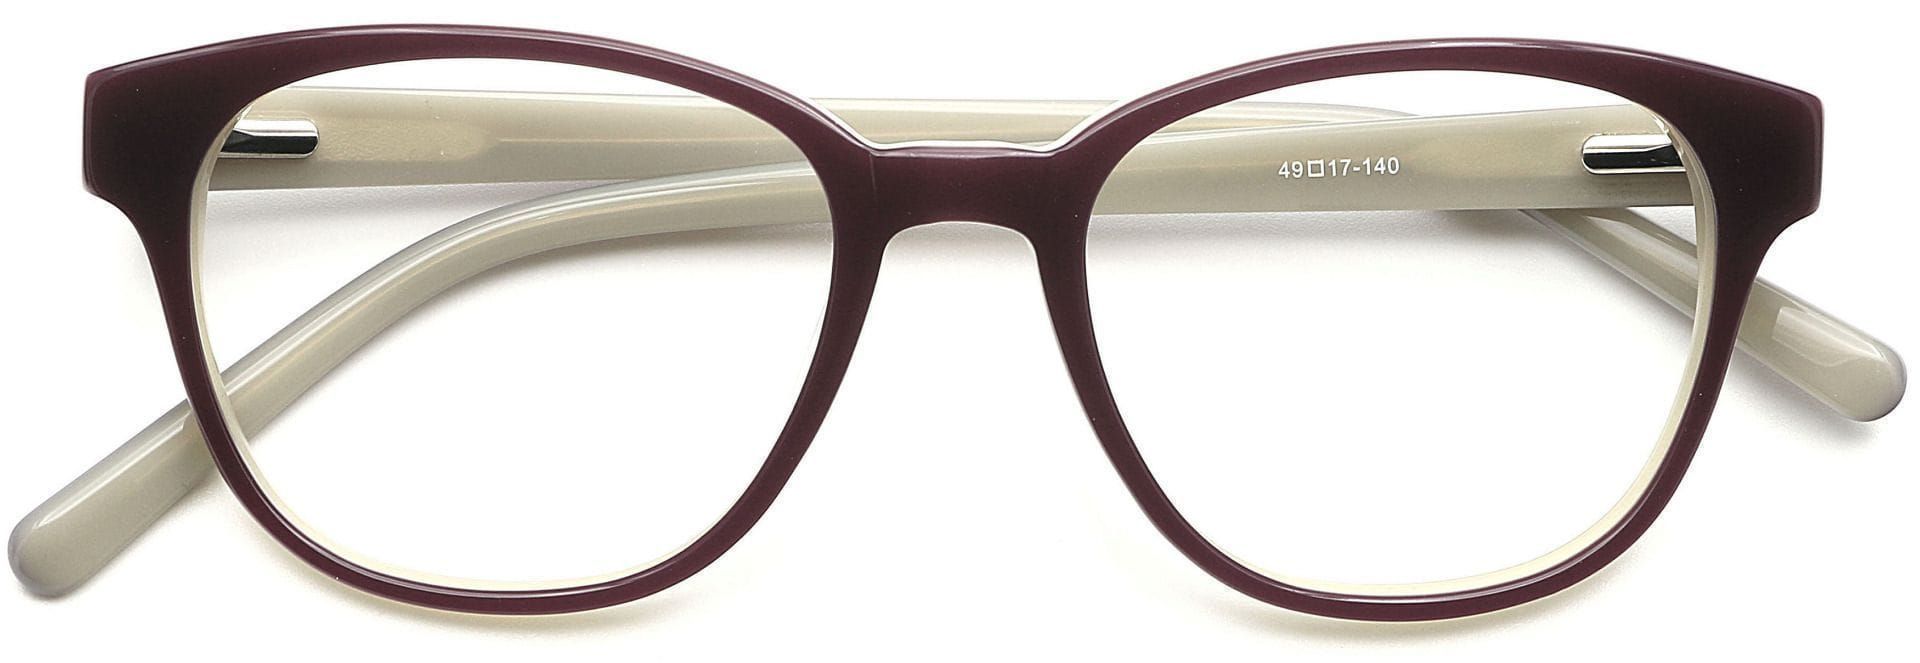 Pinnacle Classic Square Progressive Glasses - Brown